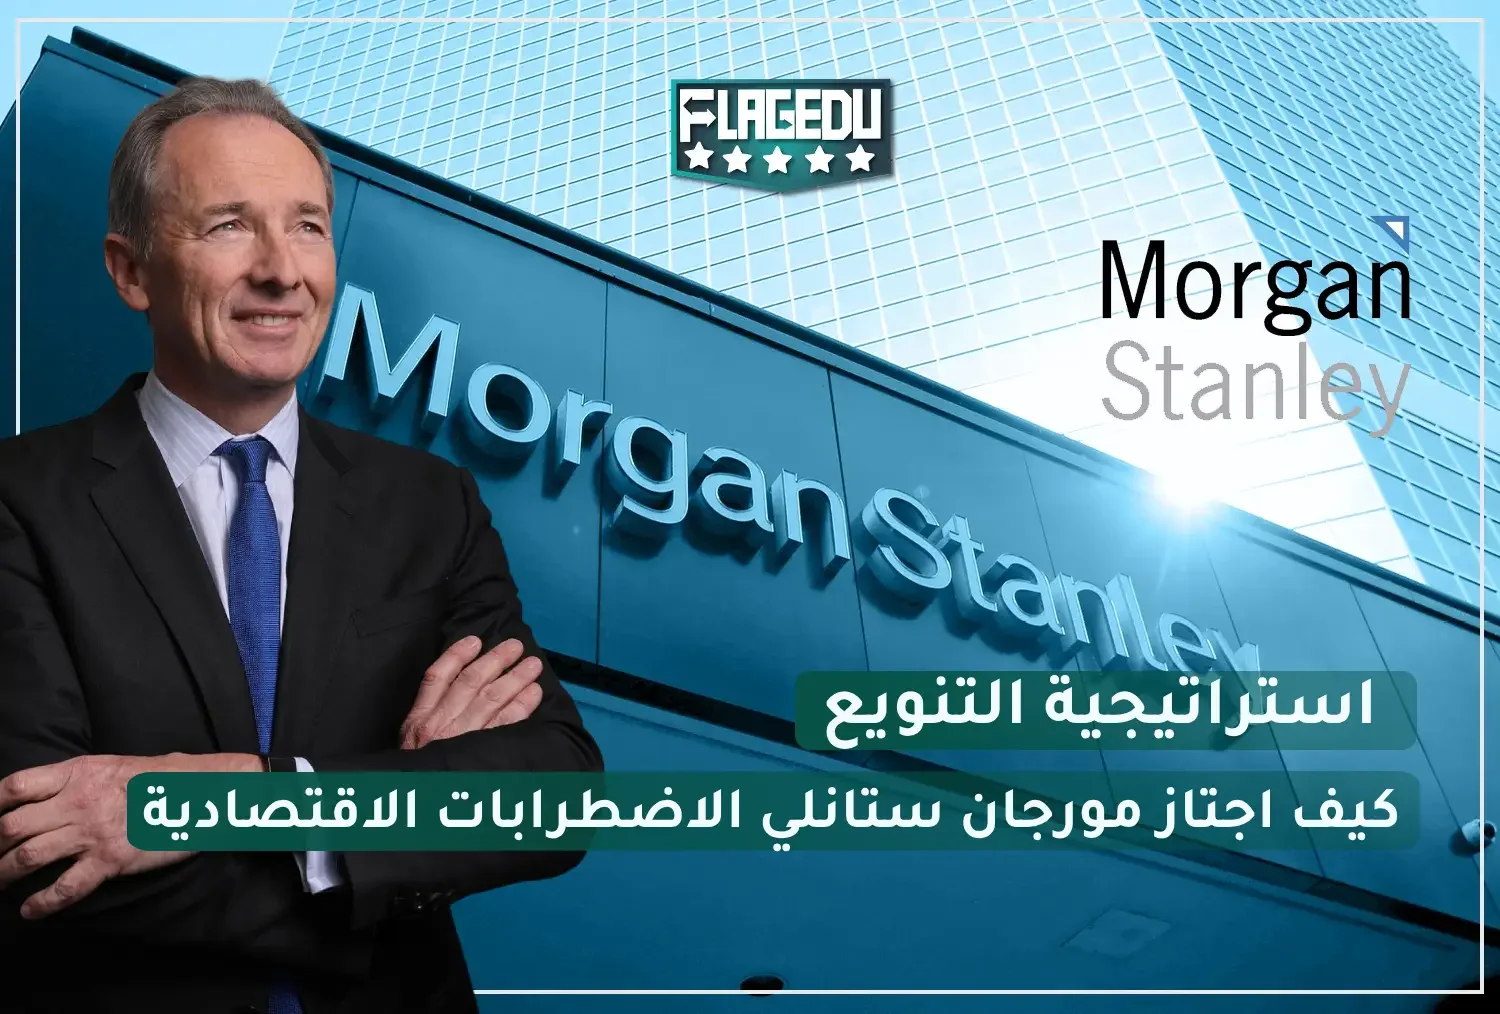 How did Morgan Stanley overcome the economic turmoil?